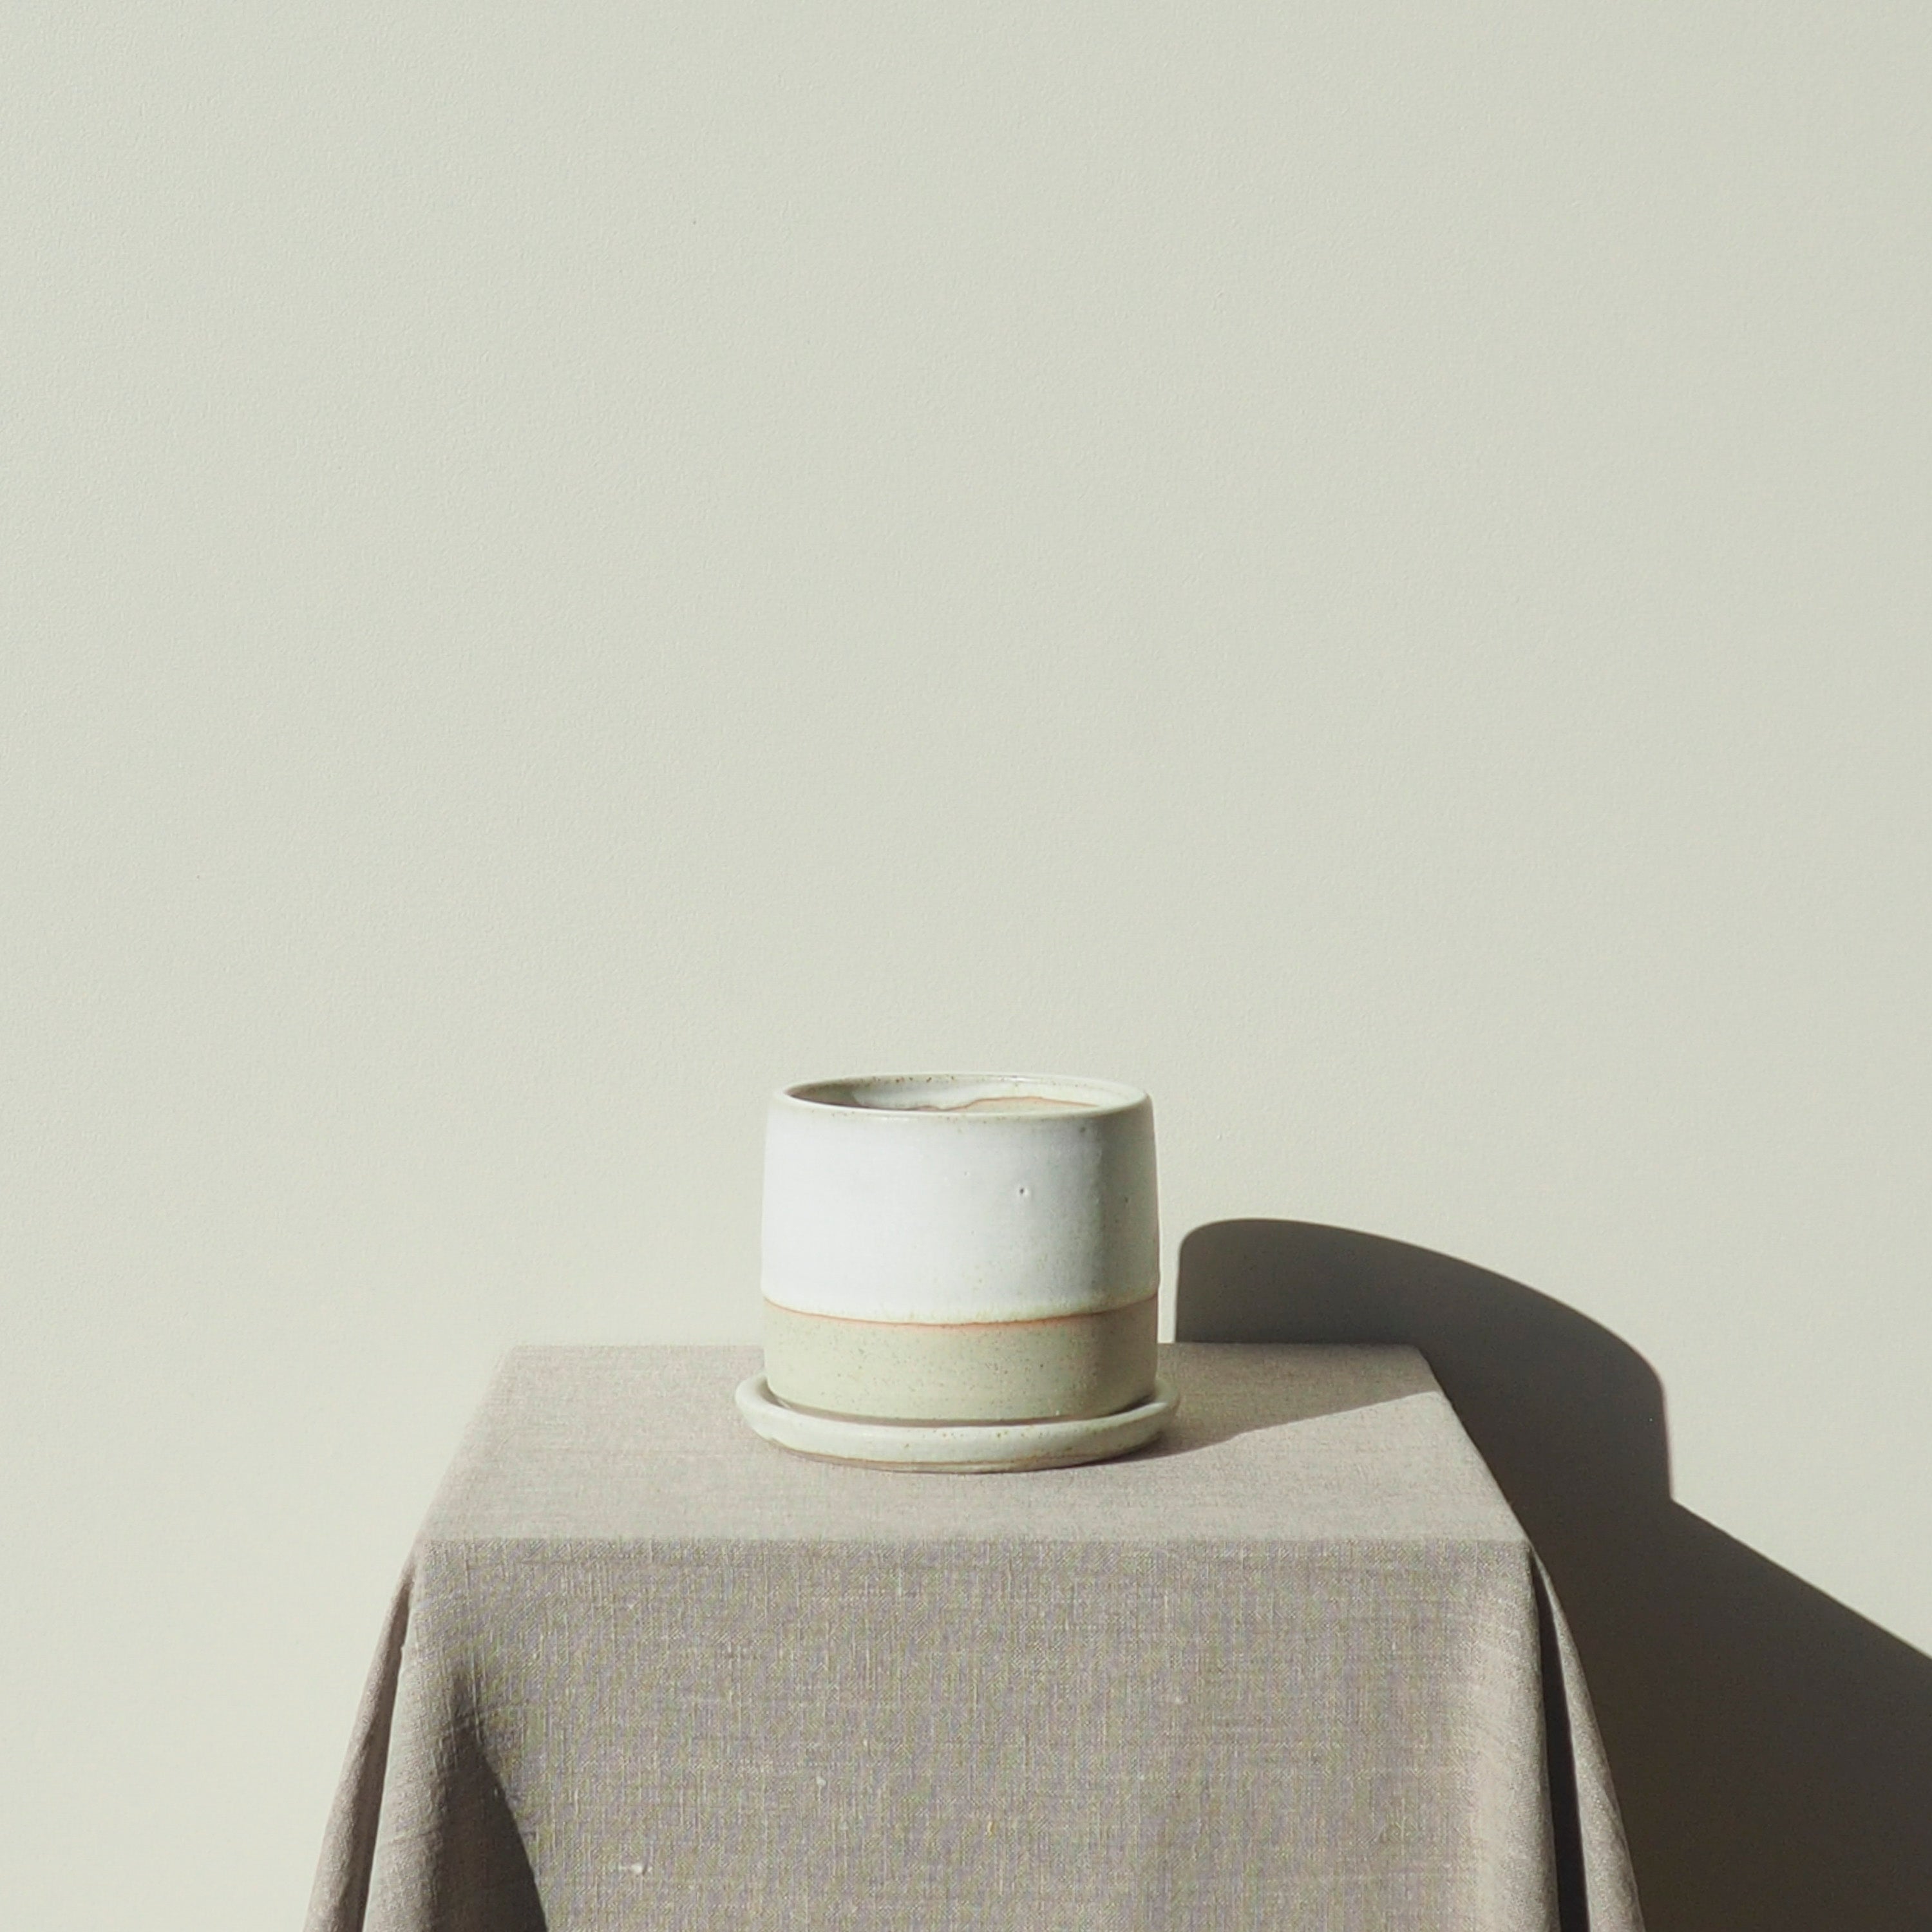 Handmade Small Crème Ceramic Plant Pot Australian Made